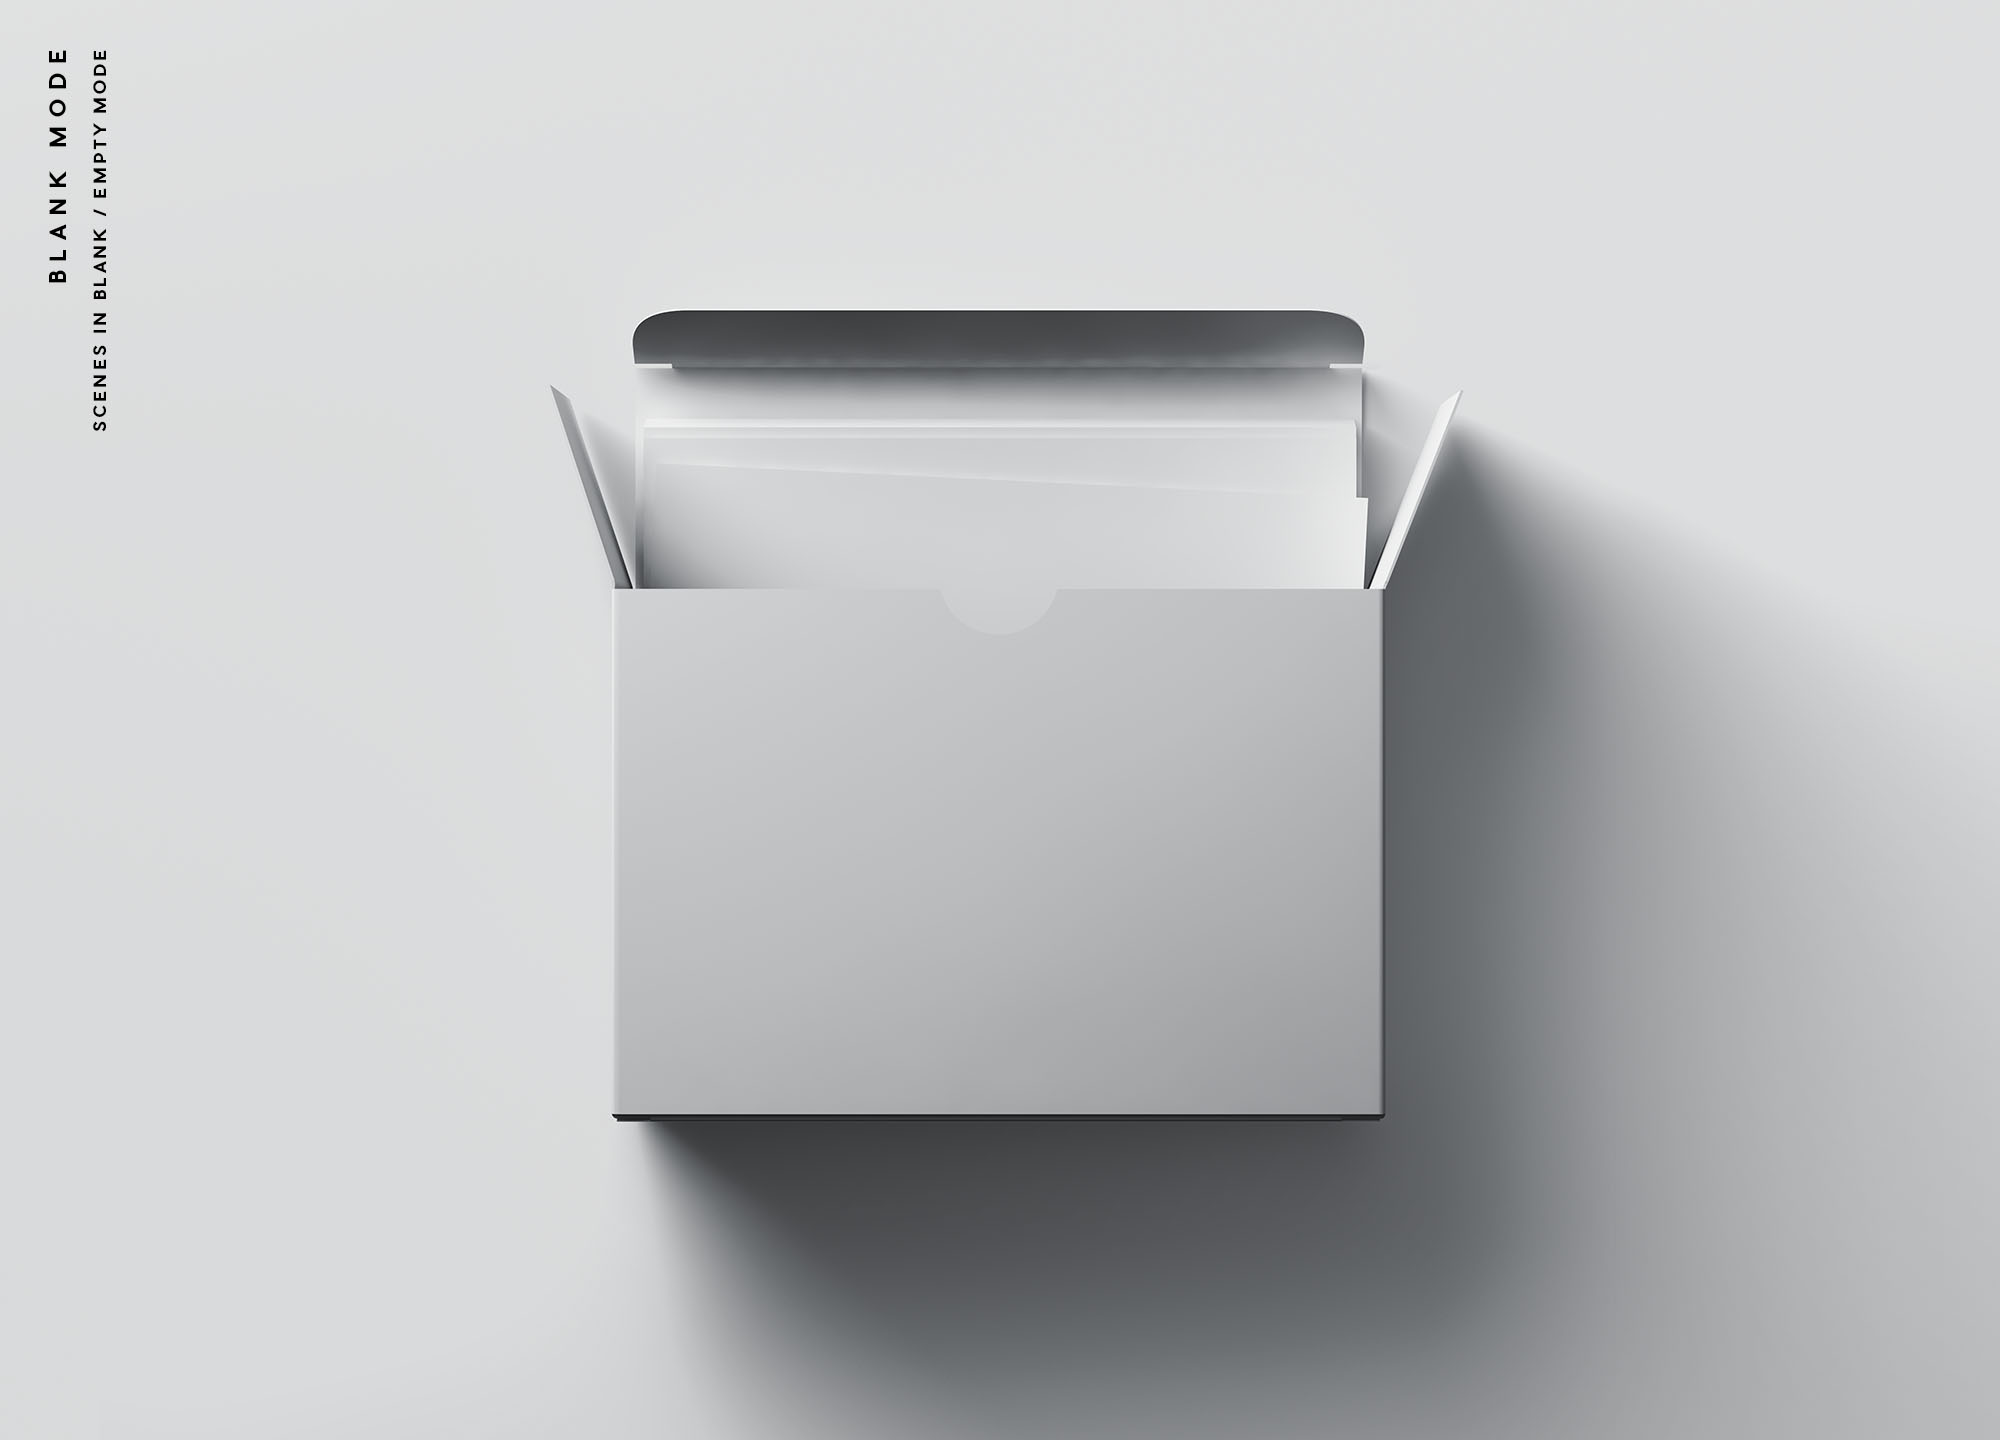 卡片包装盒外观设计效果图16图库精选 Card Box Mockup插图(8)